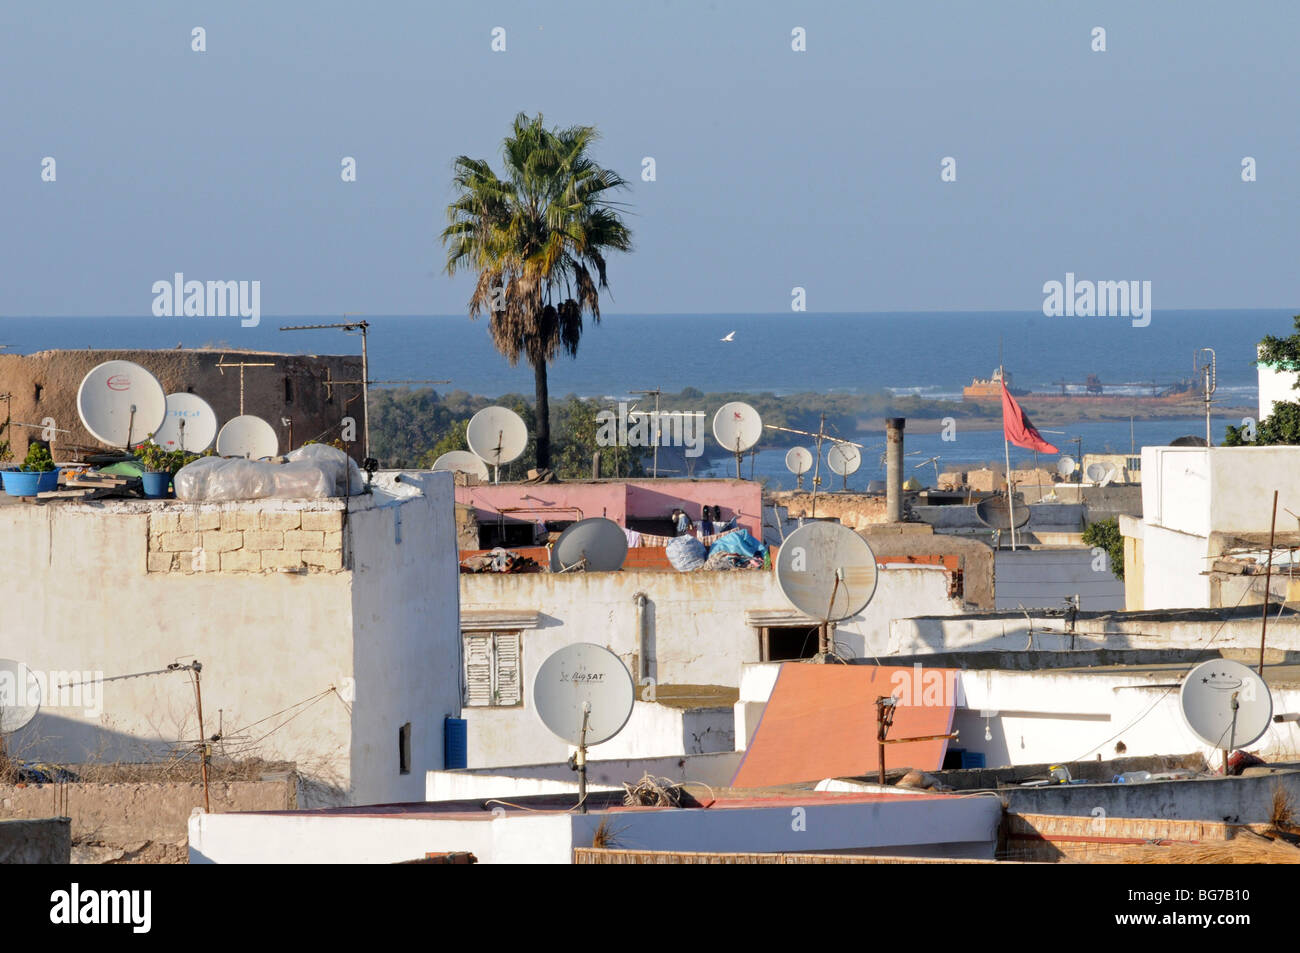 Sur les toits vue vers l'océan Atlantique, Azemmour, Maroc. Banque D'Images